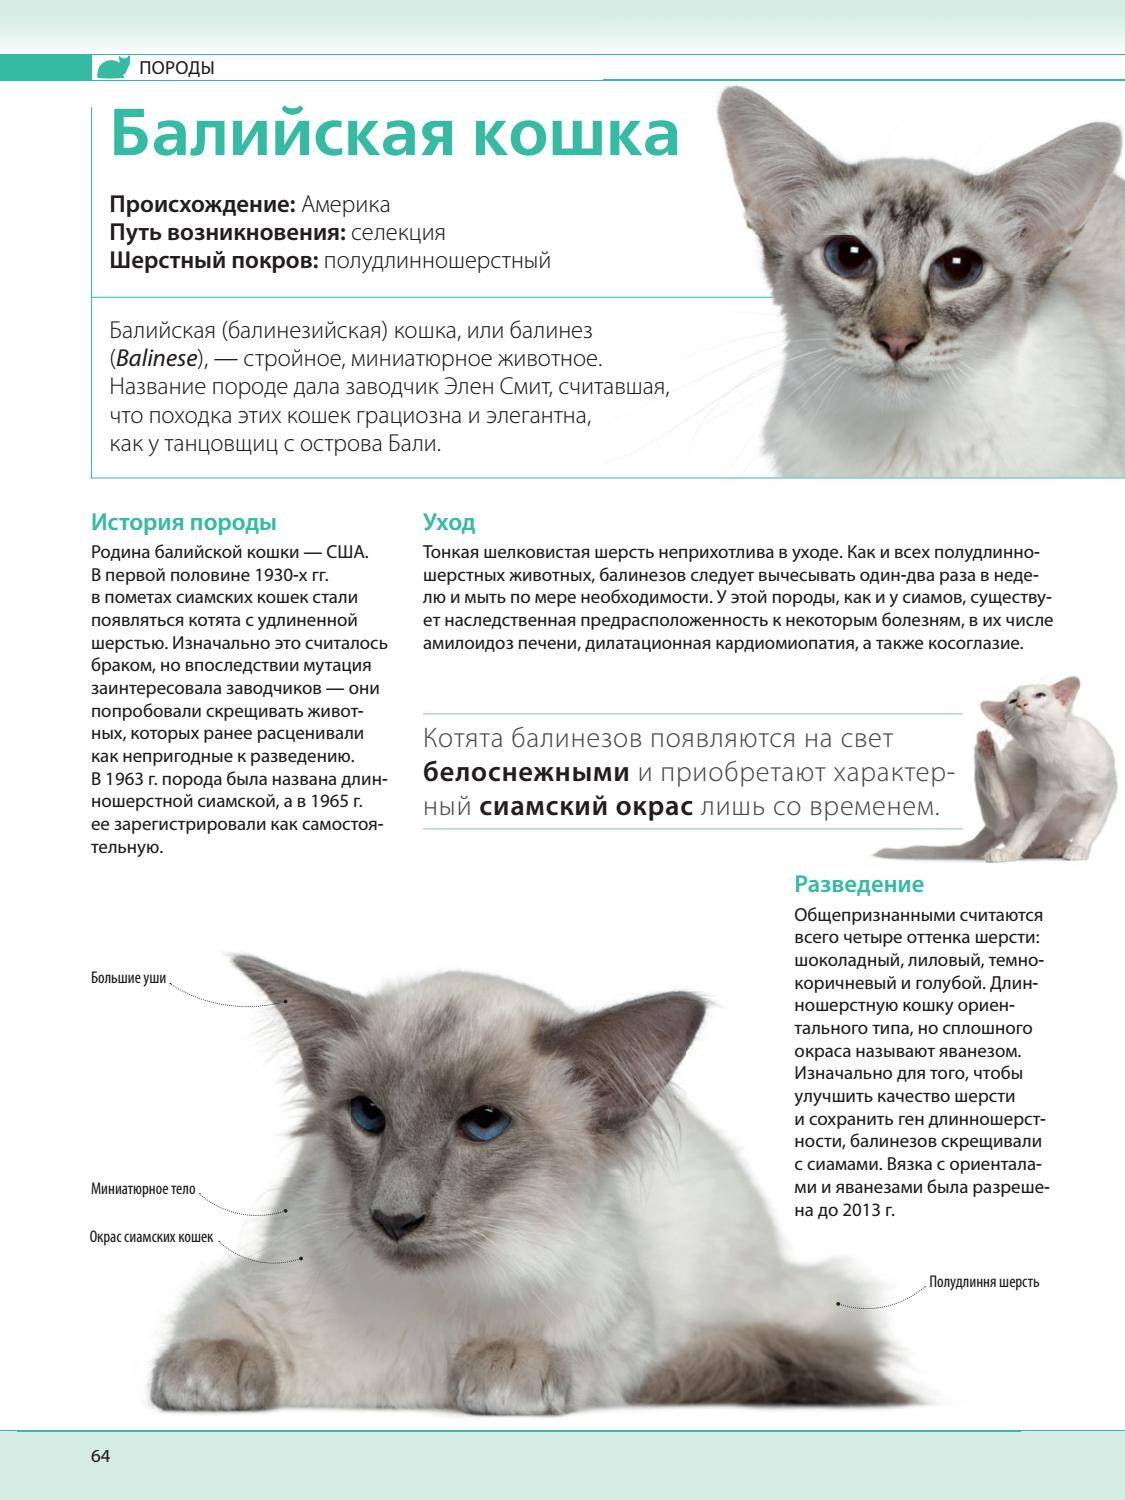 Корат: фото кошки, описание породы, характер, правила ухода и содержания | for-pet